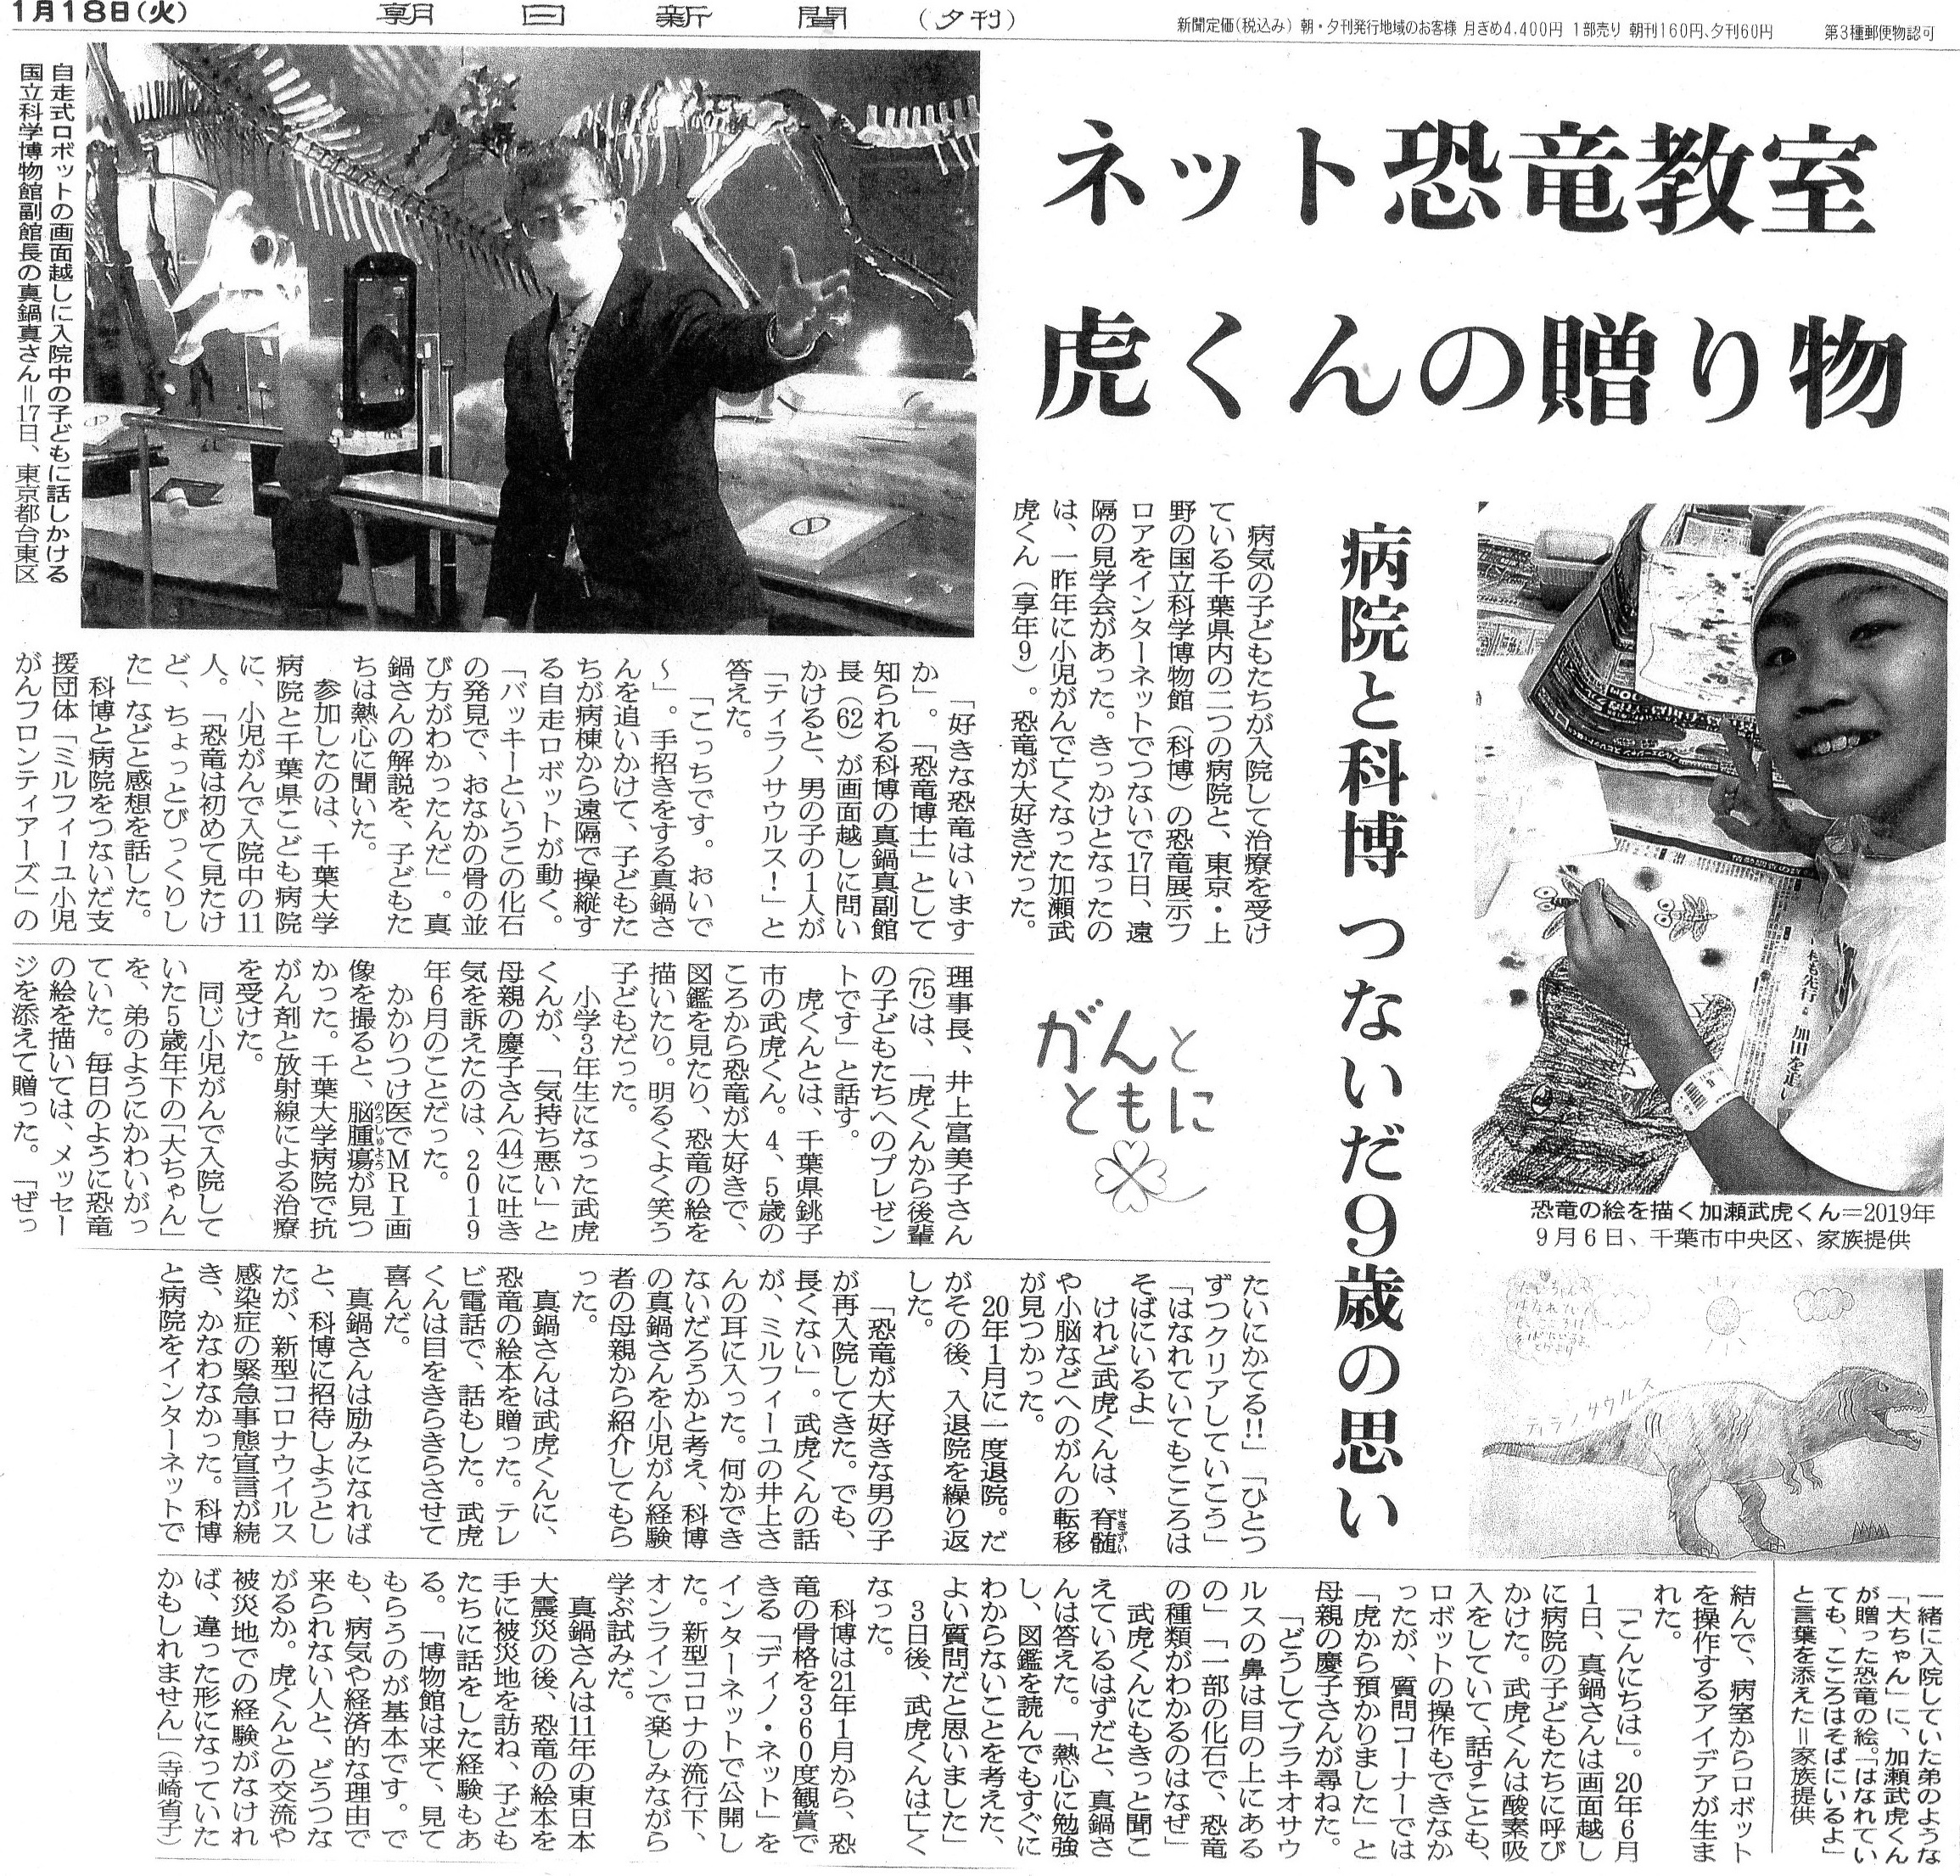 上野の科学博物館の恐竜見学の記事（朝日新聞）